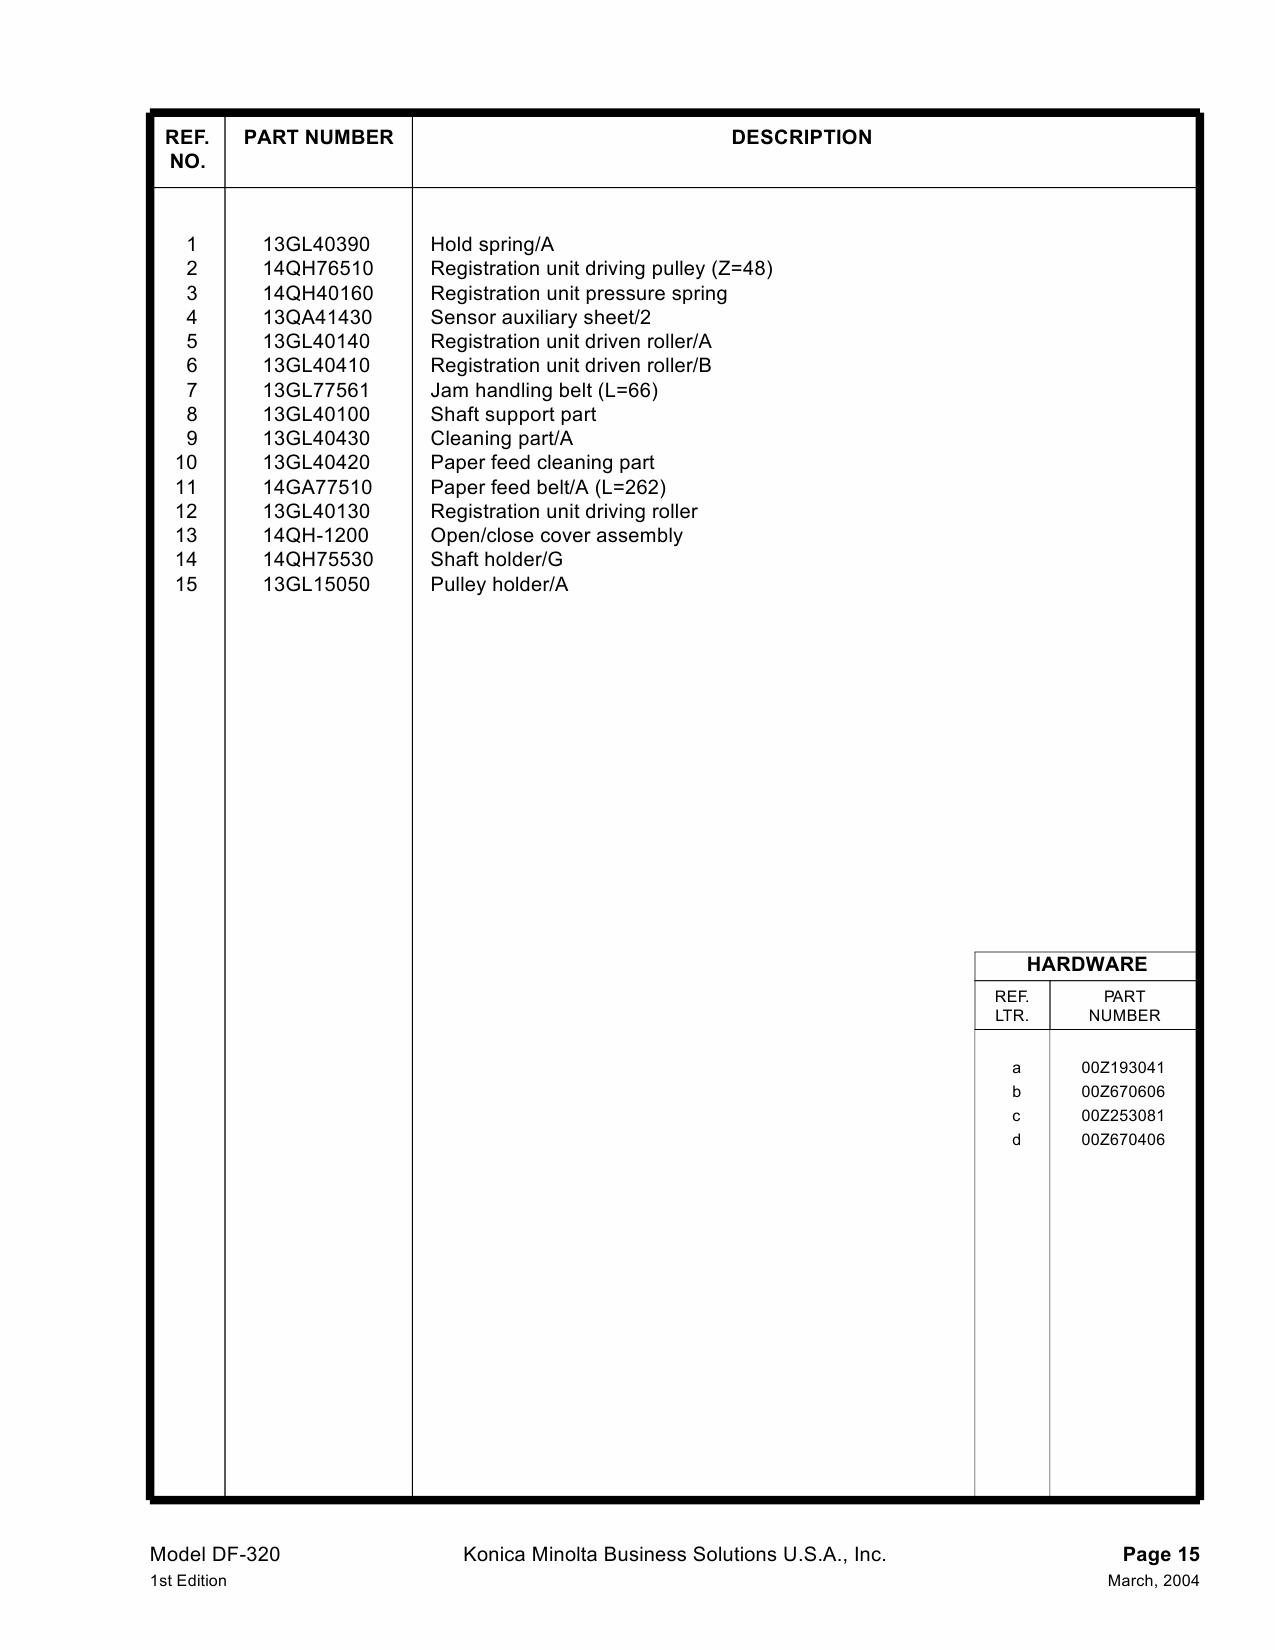 Konica-Minolta Options DF-320 Parts Manual-6